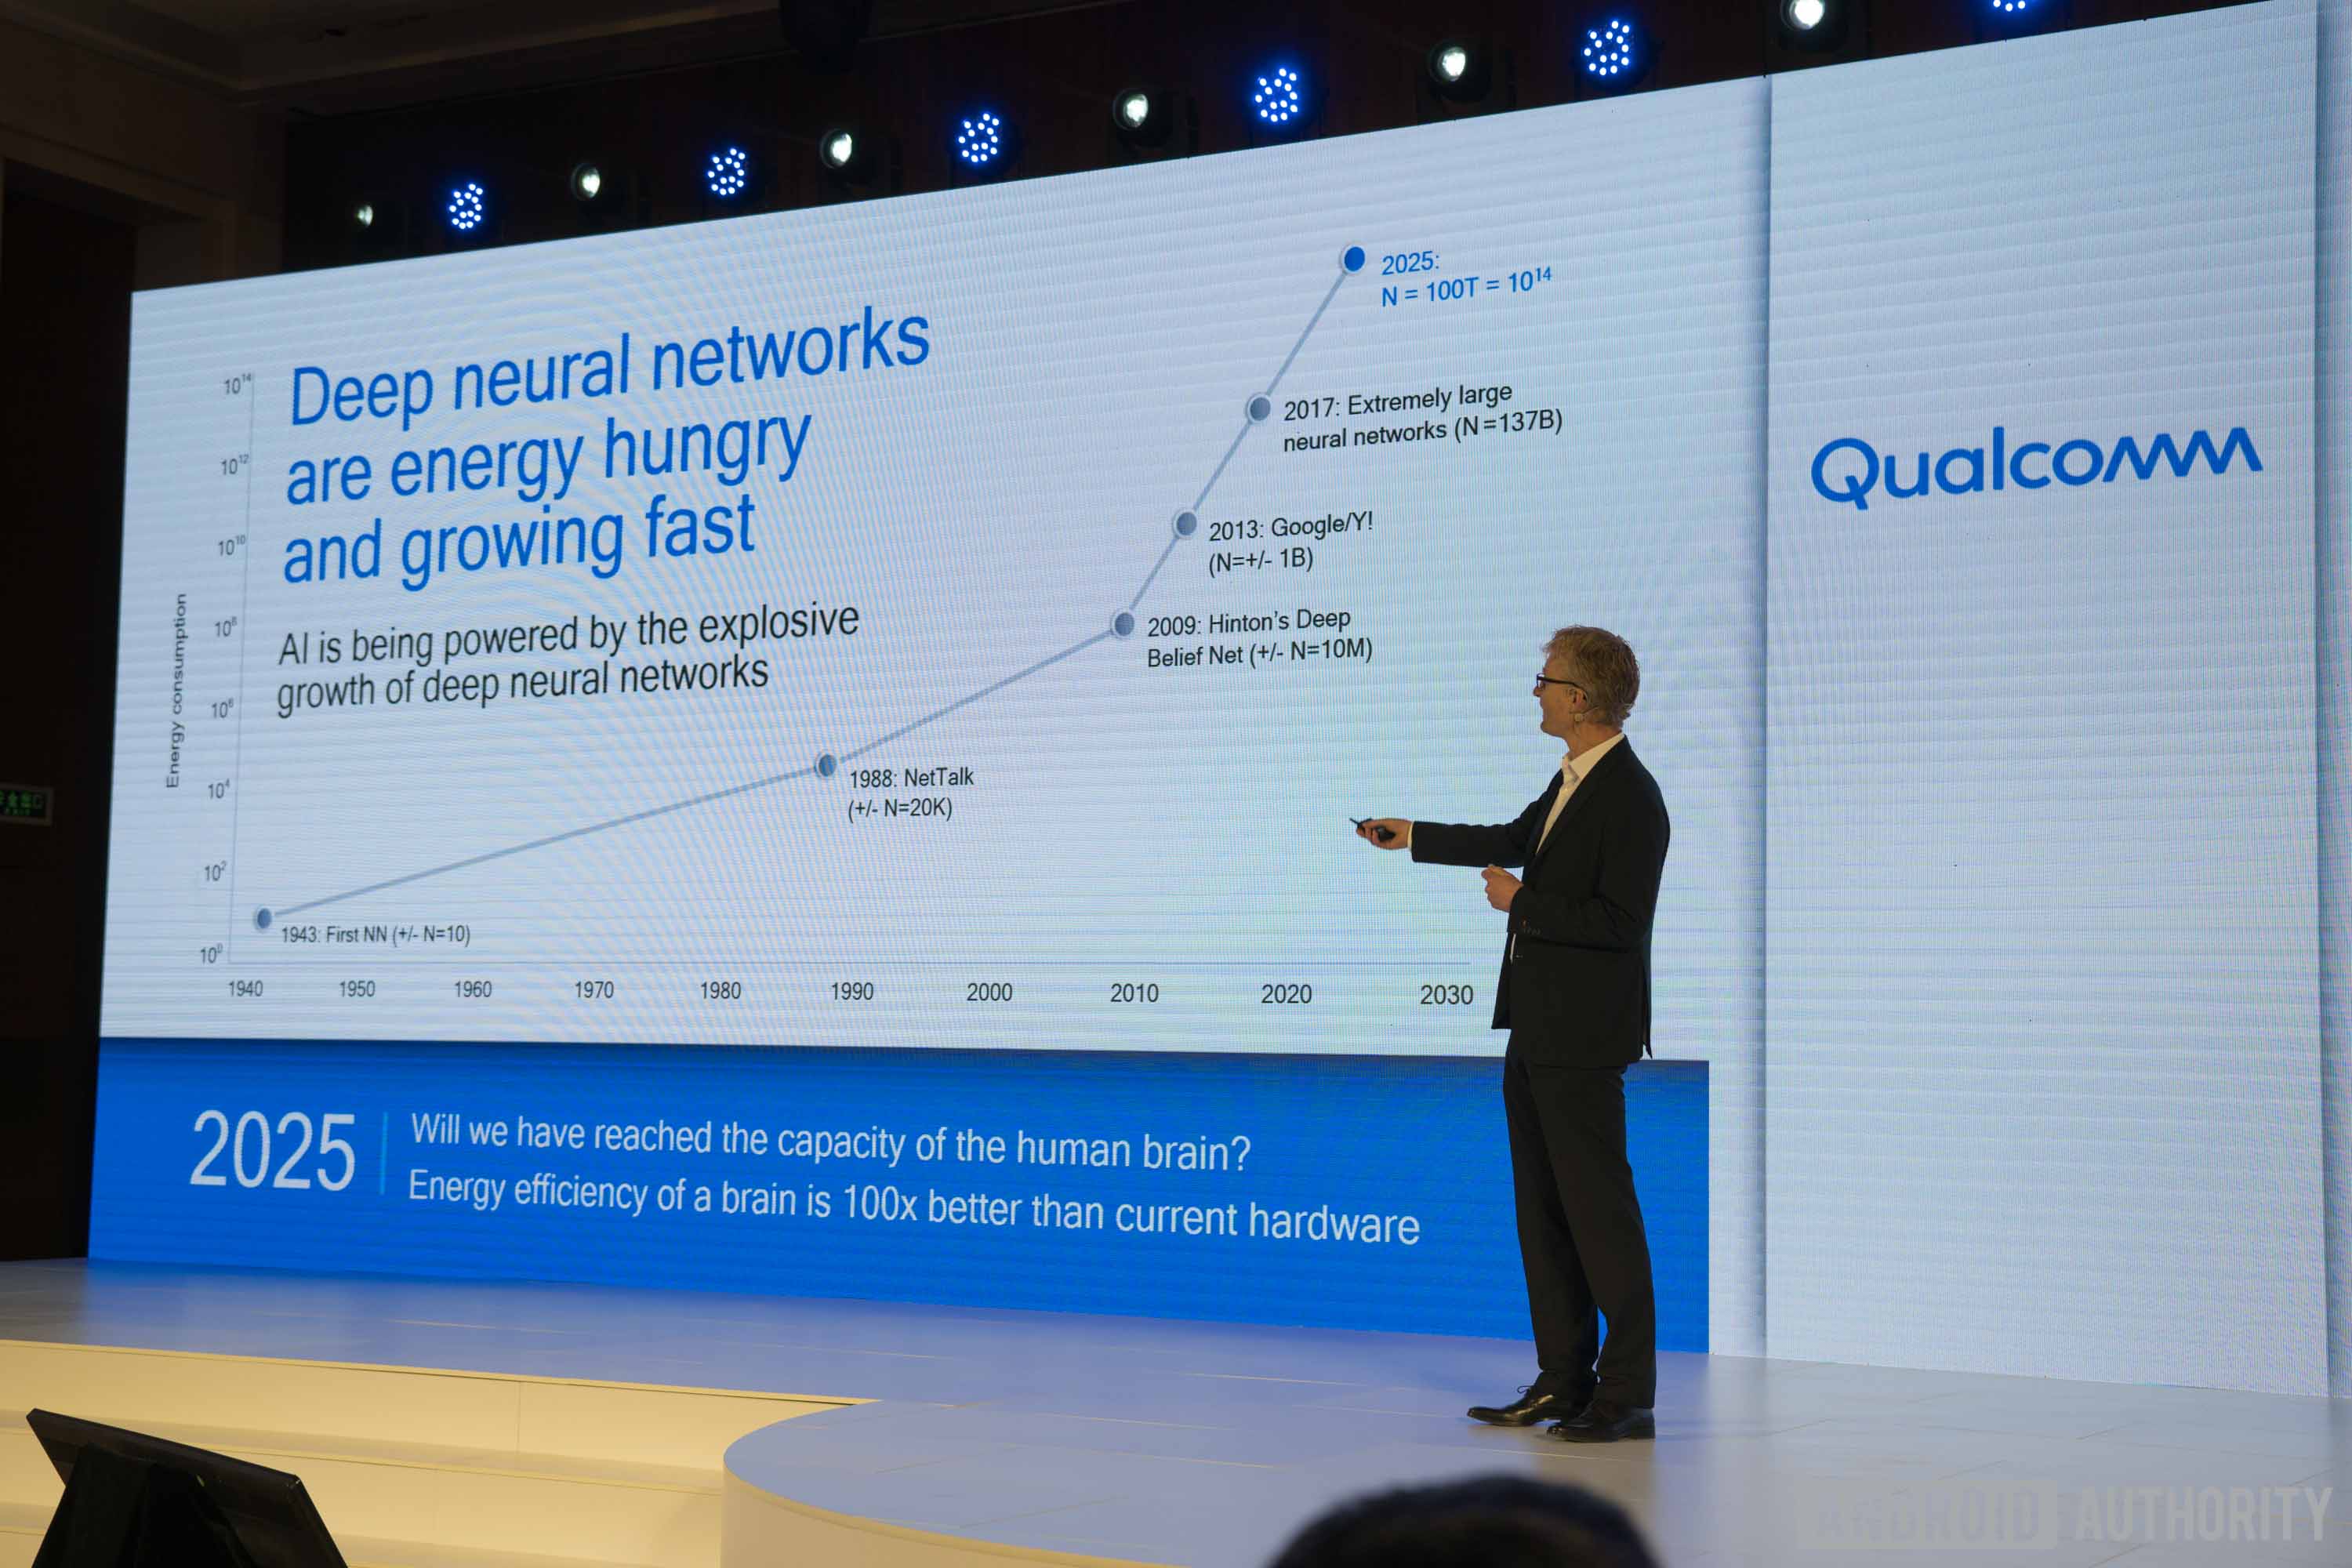 高通技术副总裁Max Welling显示了深度神经网络要求更多能量的速度